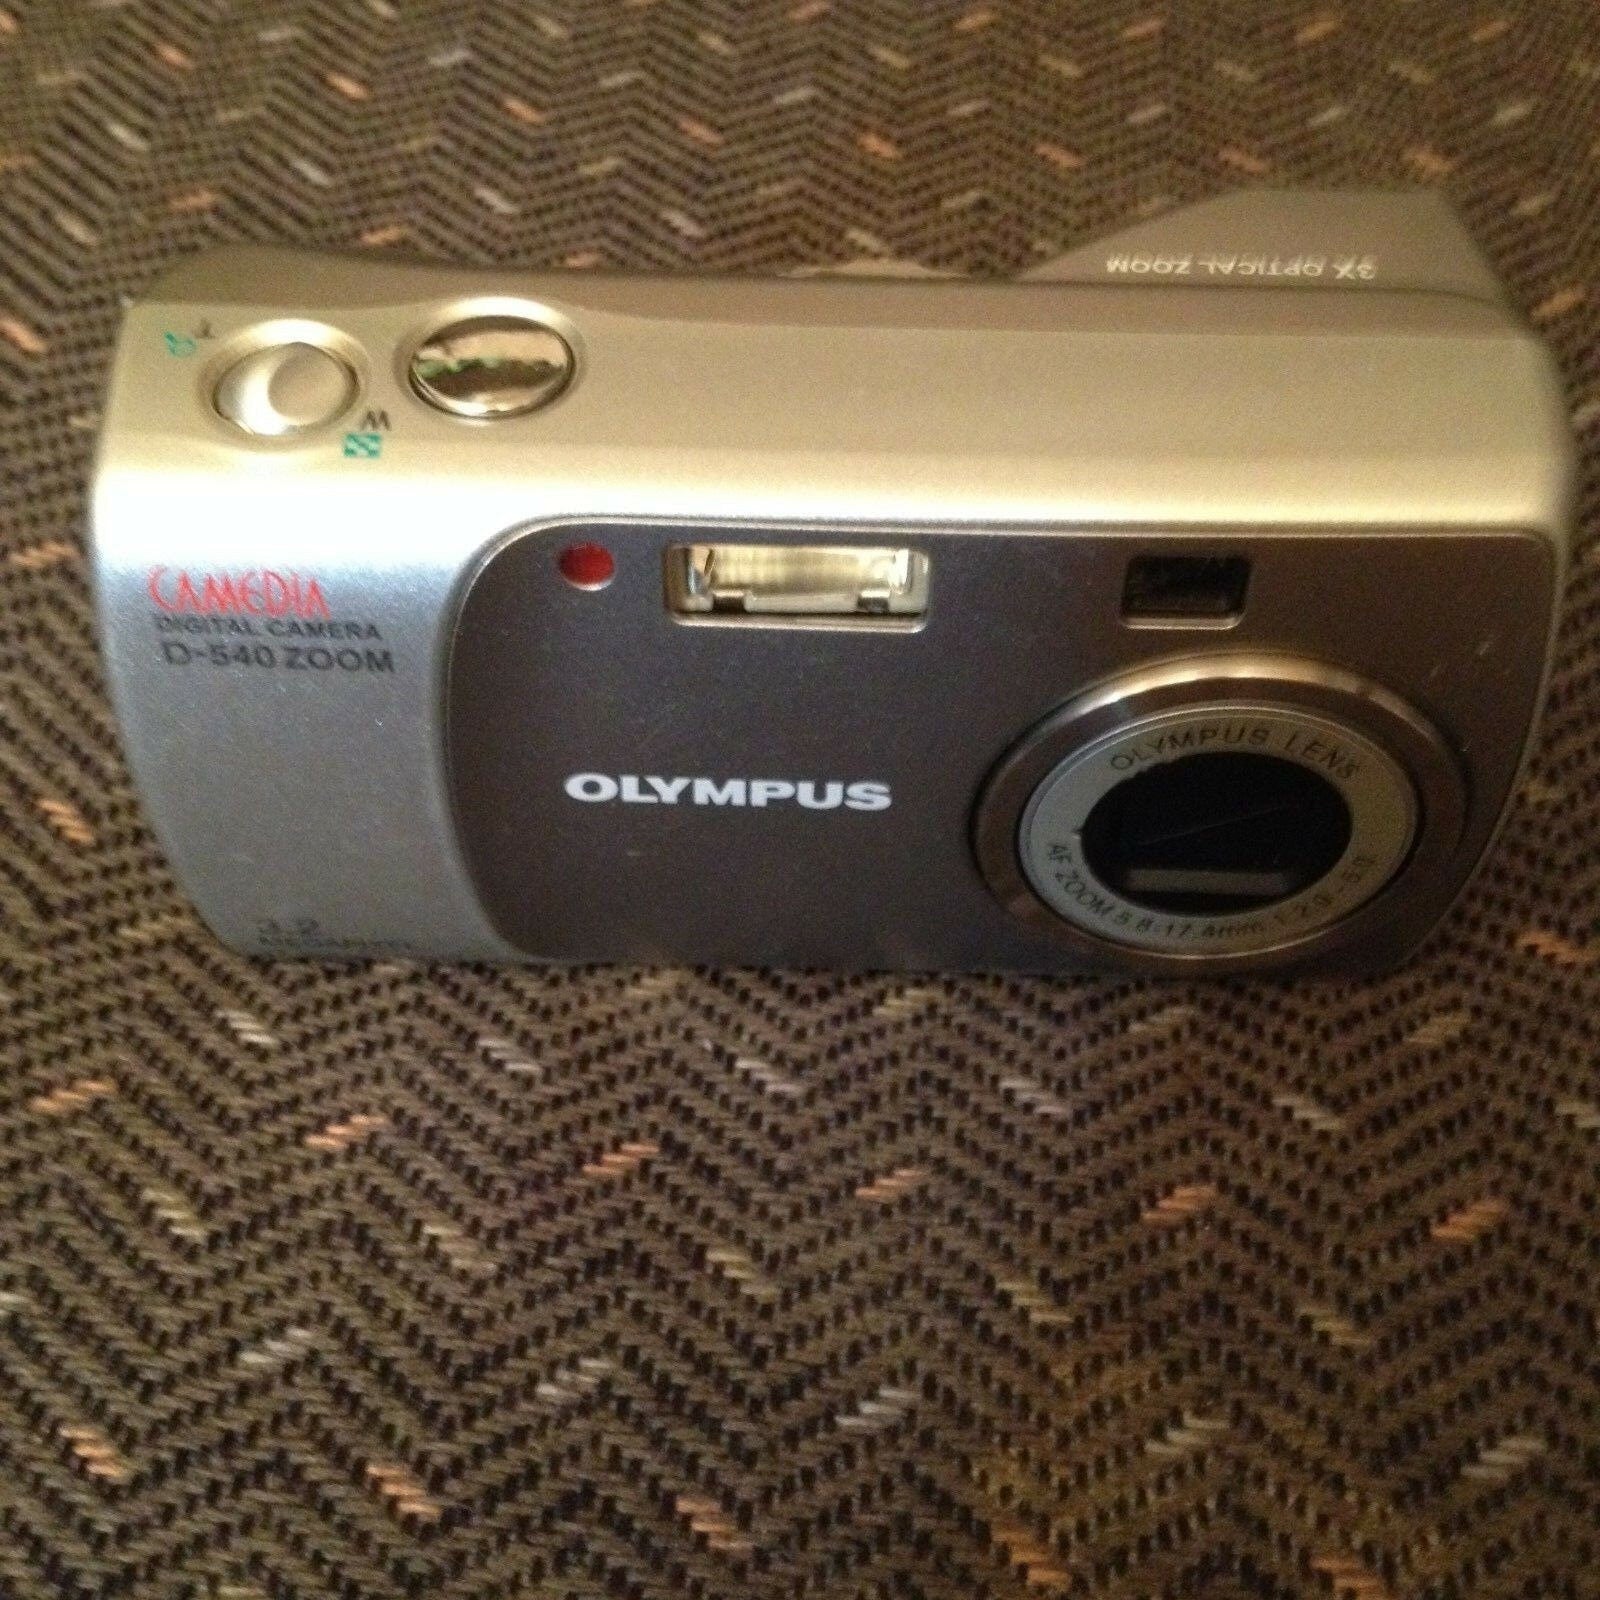 Olympus CAMEDIA D-540 ZOOM 3.2MP Digital Camera w/ 3x optical zoom - silver